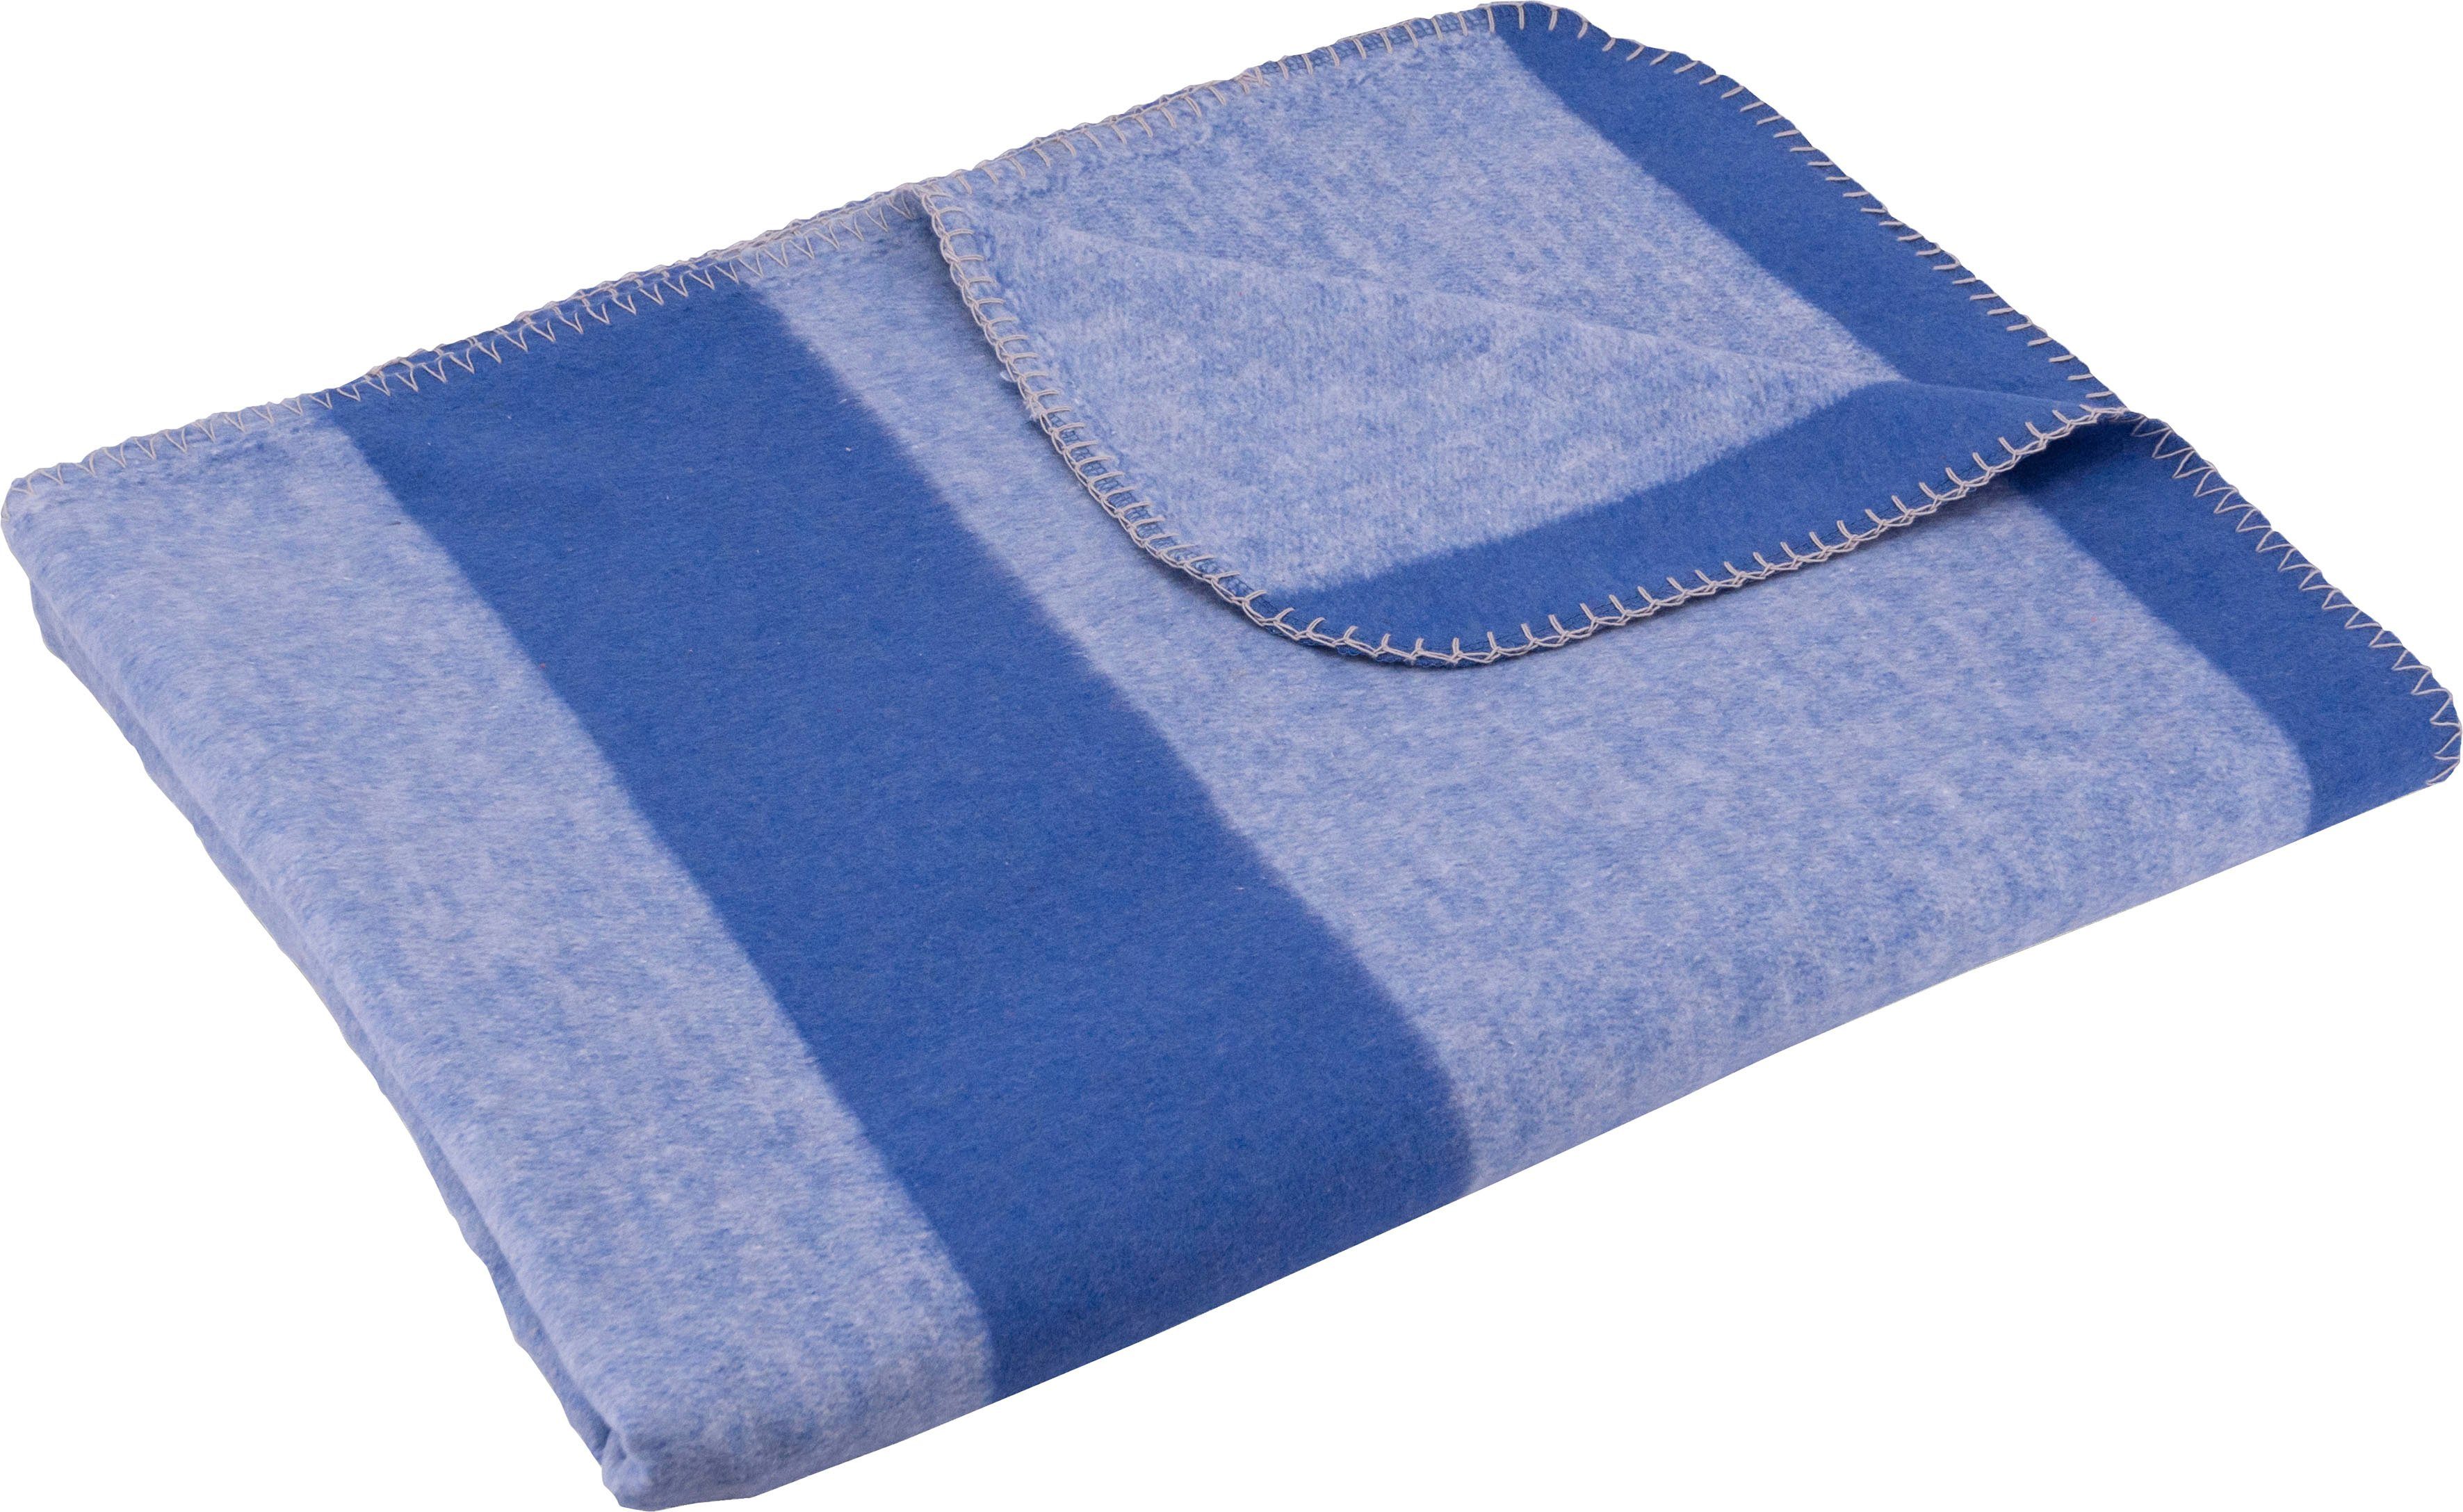 Wohndecke Kuscheldecke, SETEX, mit Streifen, Kuscheldecke hellblau/blau | Baumwolldecken